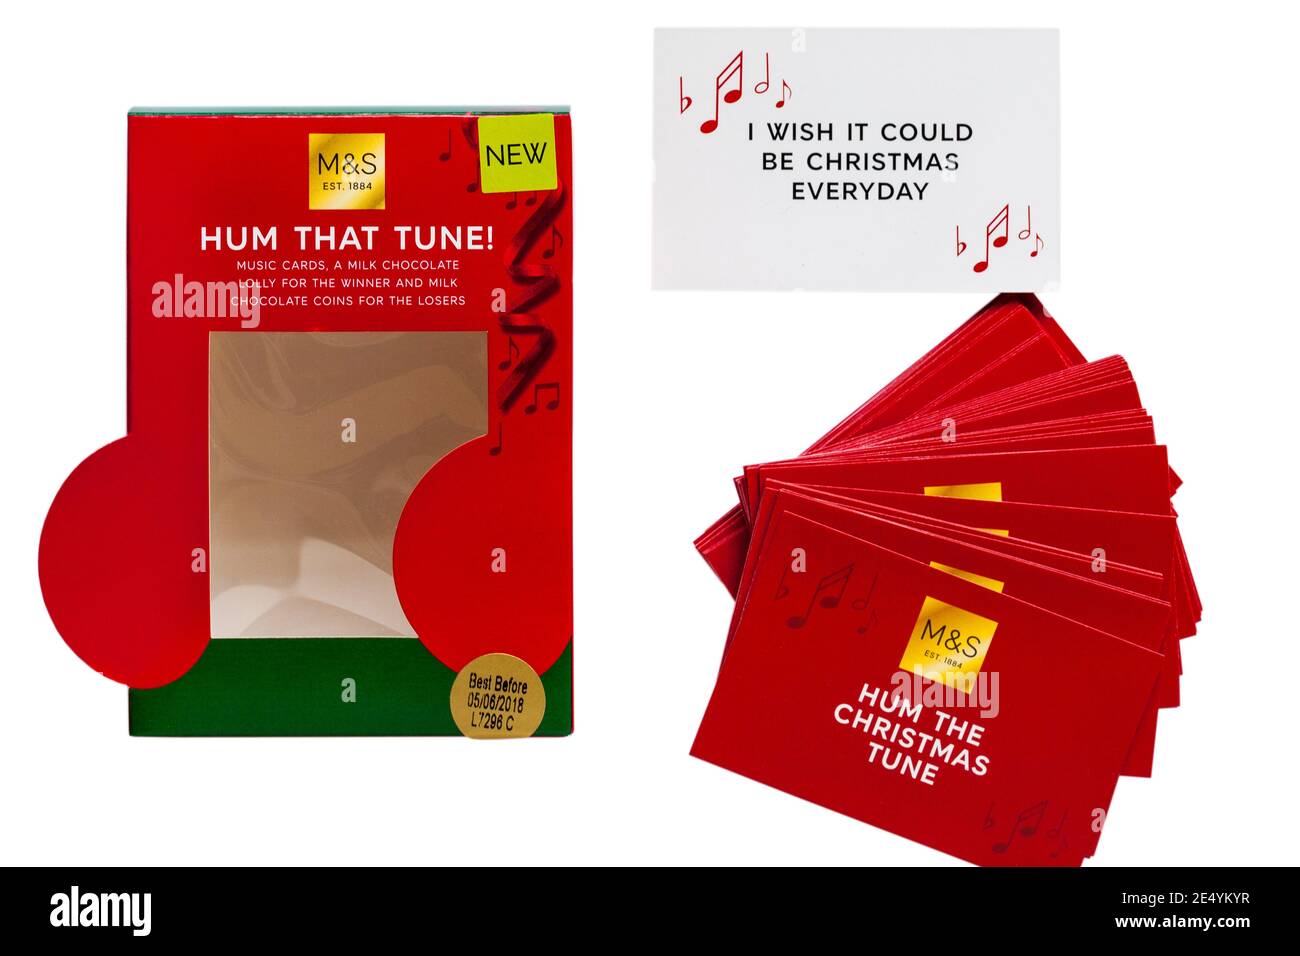 M&S Hum Tune Game avec Hum The Christmas Tune Cartes retirées de la boîte sur fond blanc - I Nous aurions bien aimé Noël tous les jours Banque D'Images